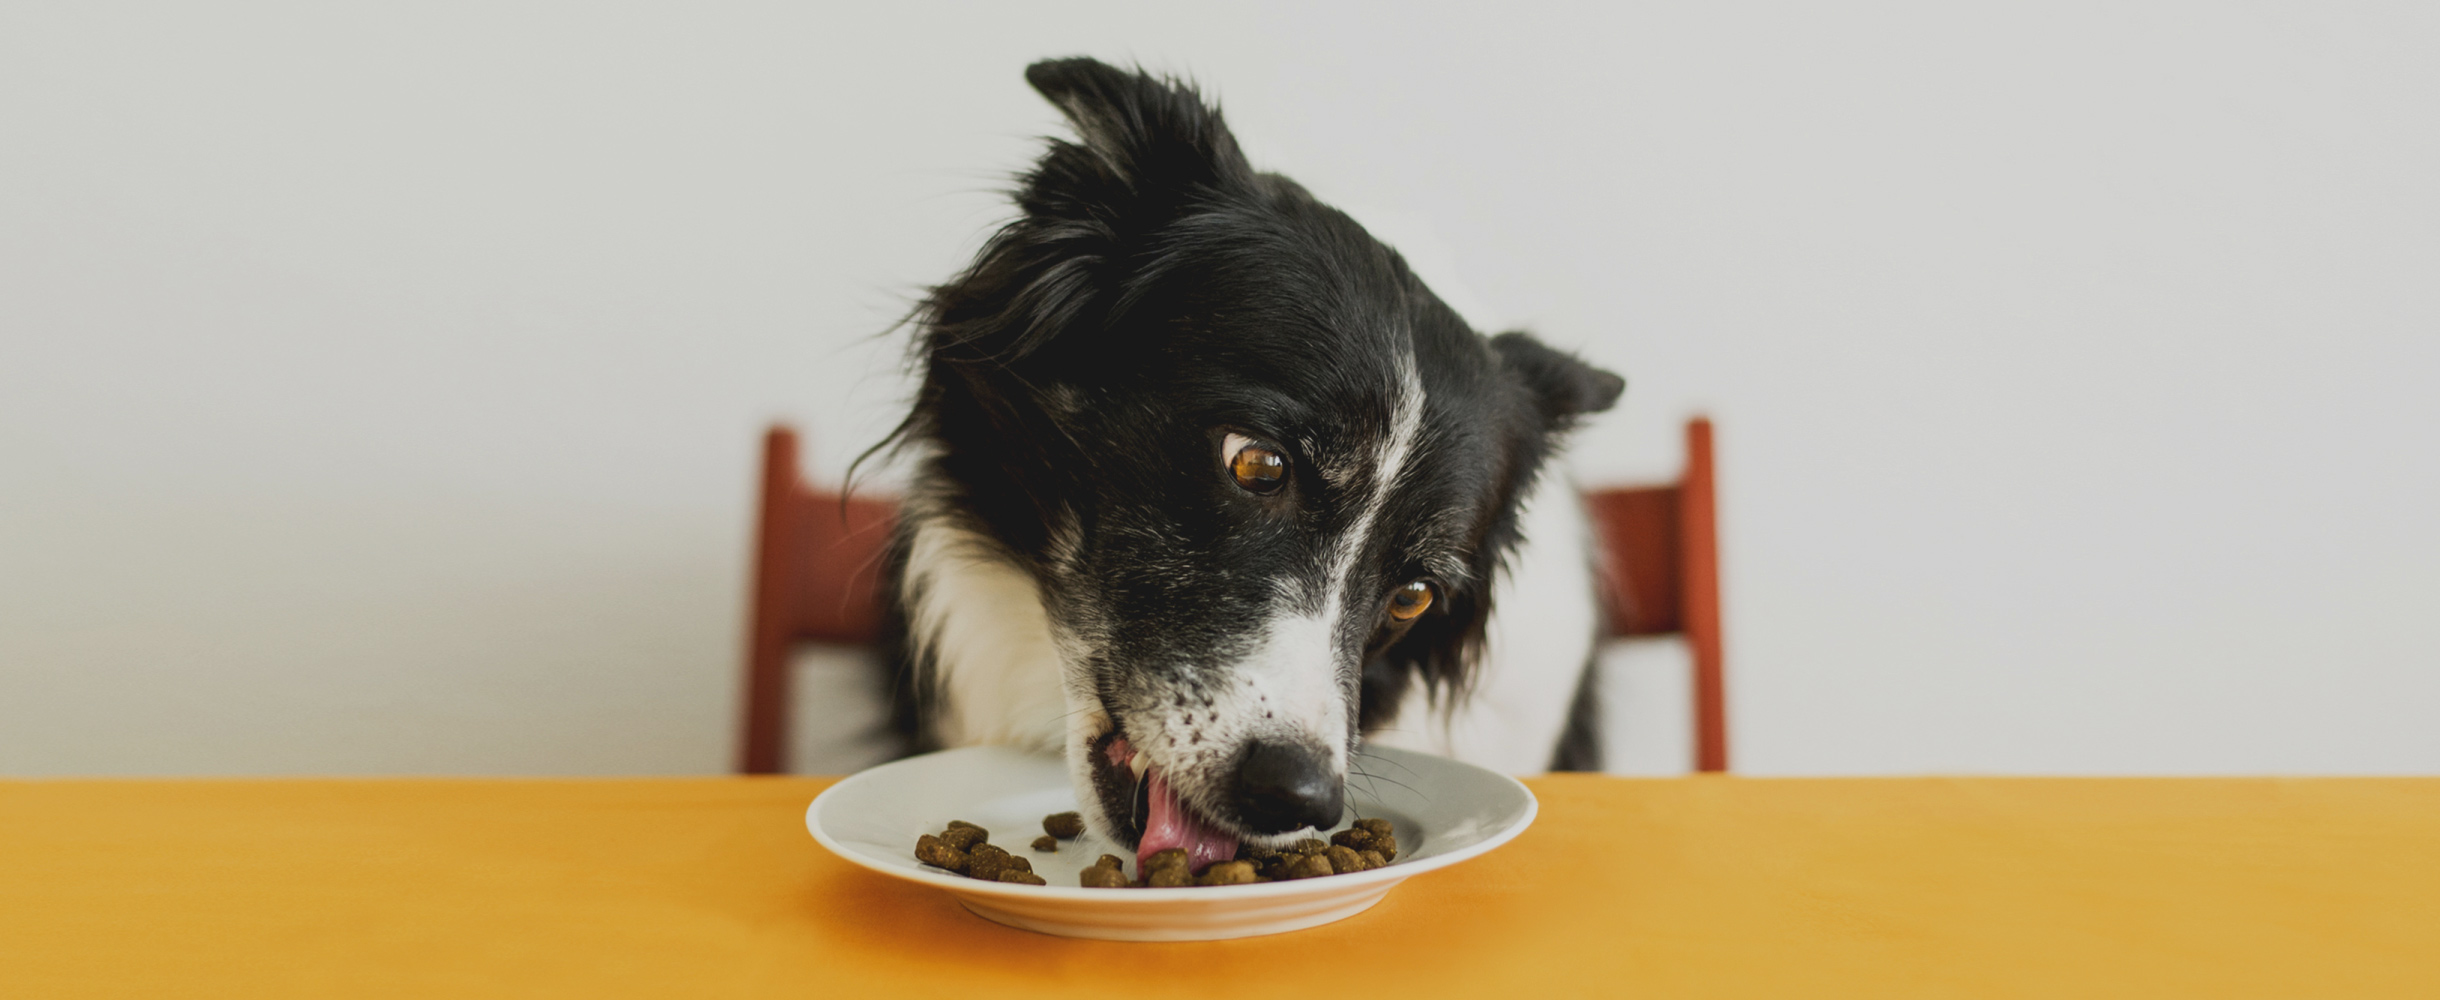 Какой корм лучше для собак – «натуралка» или сухой?